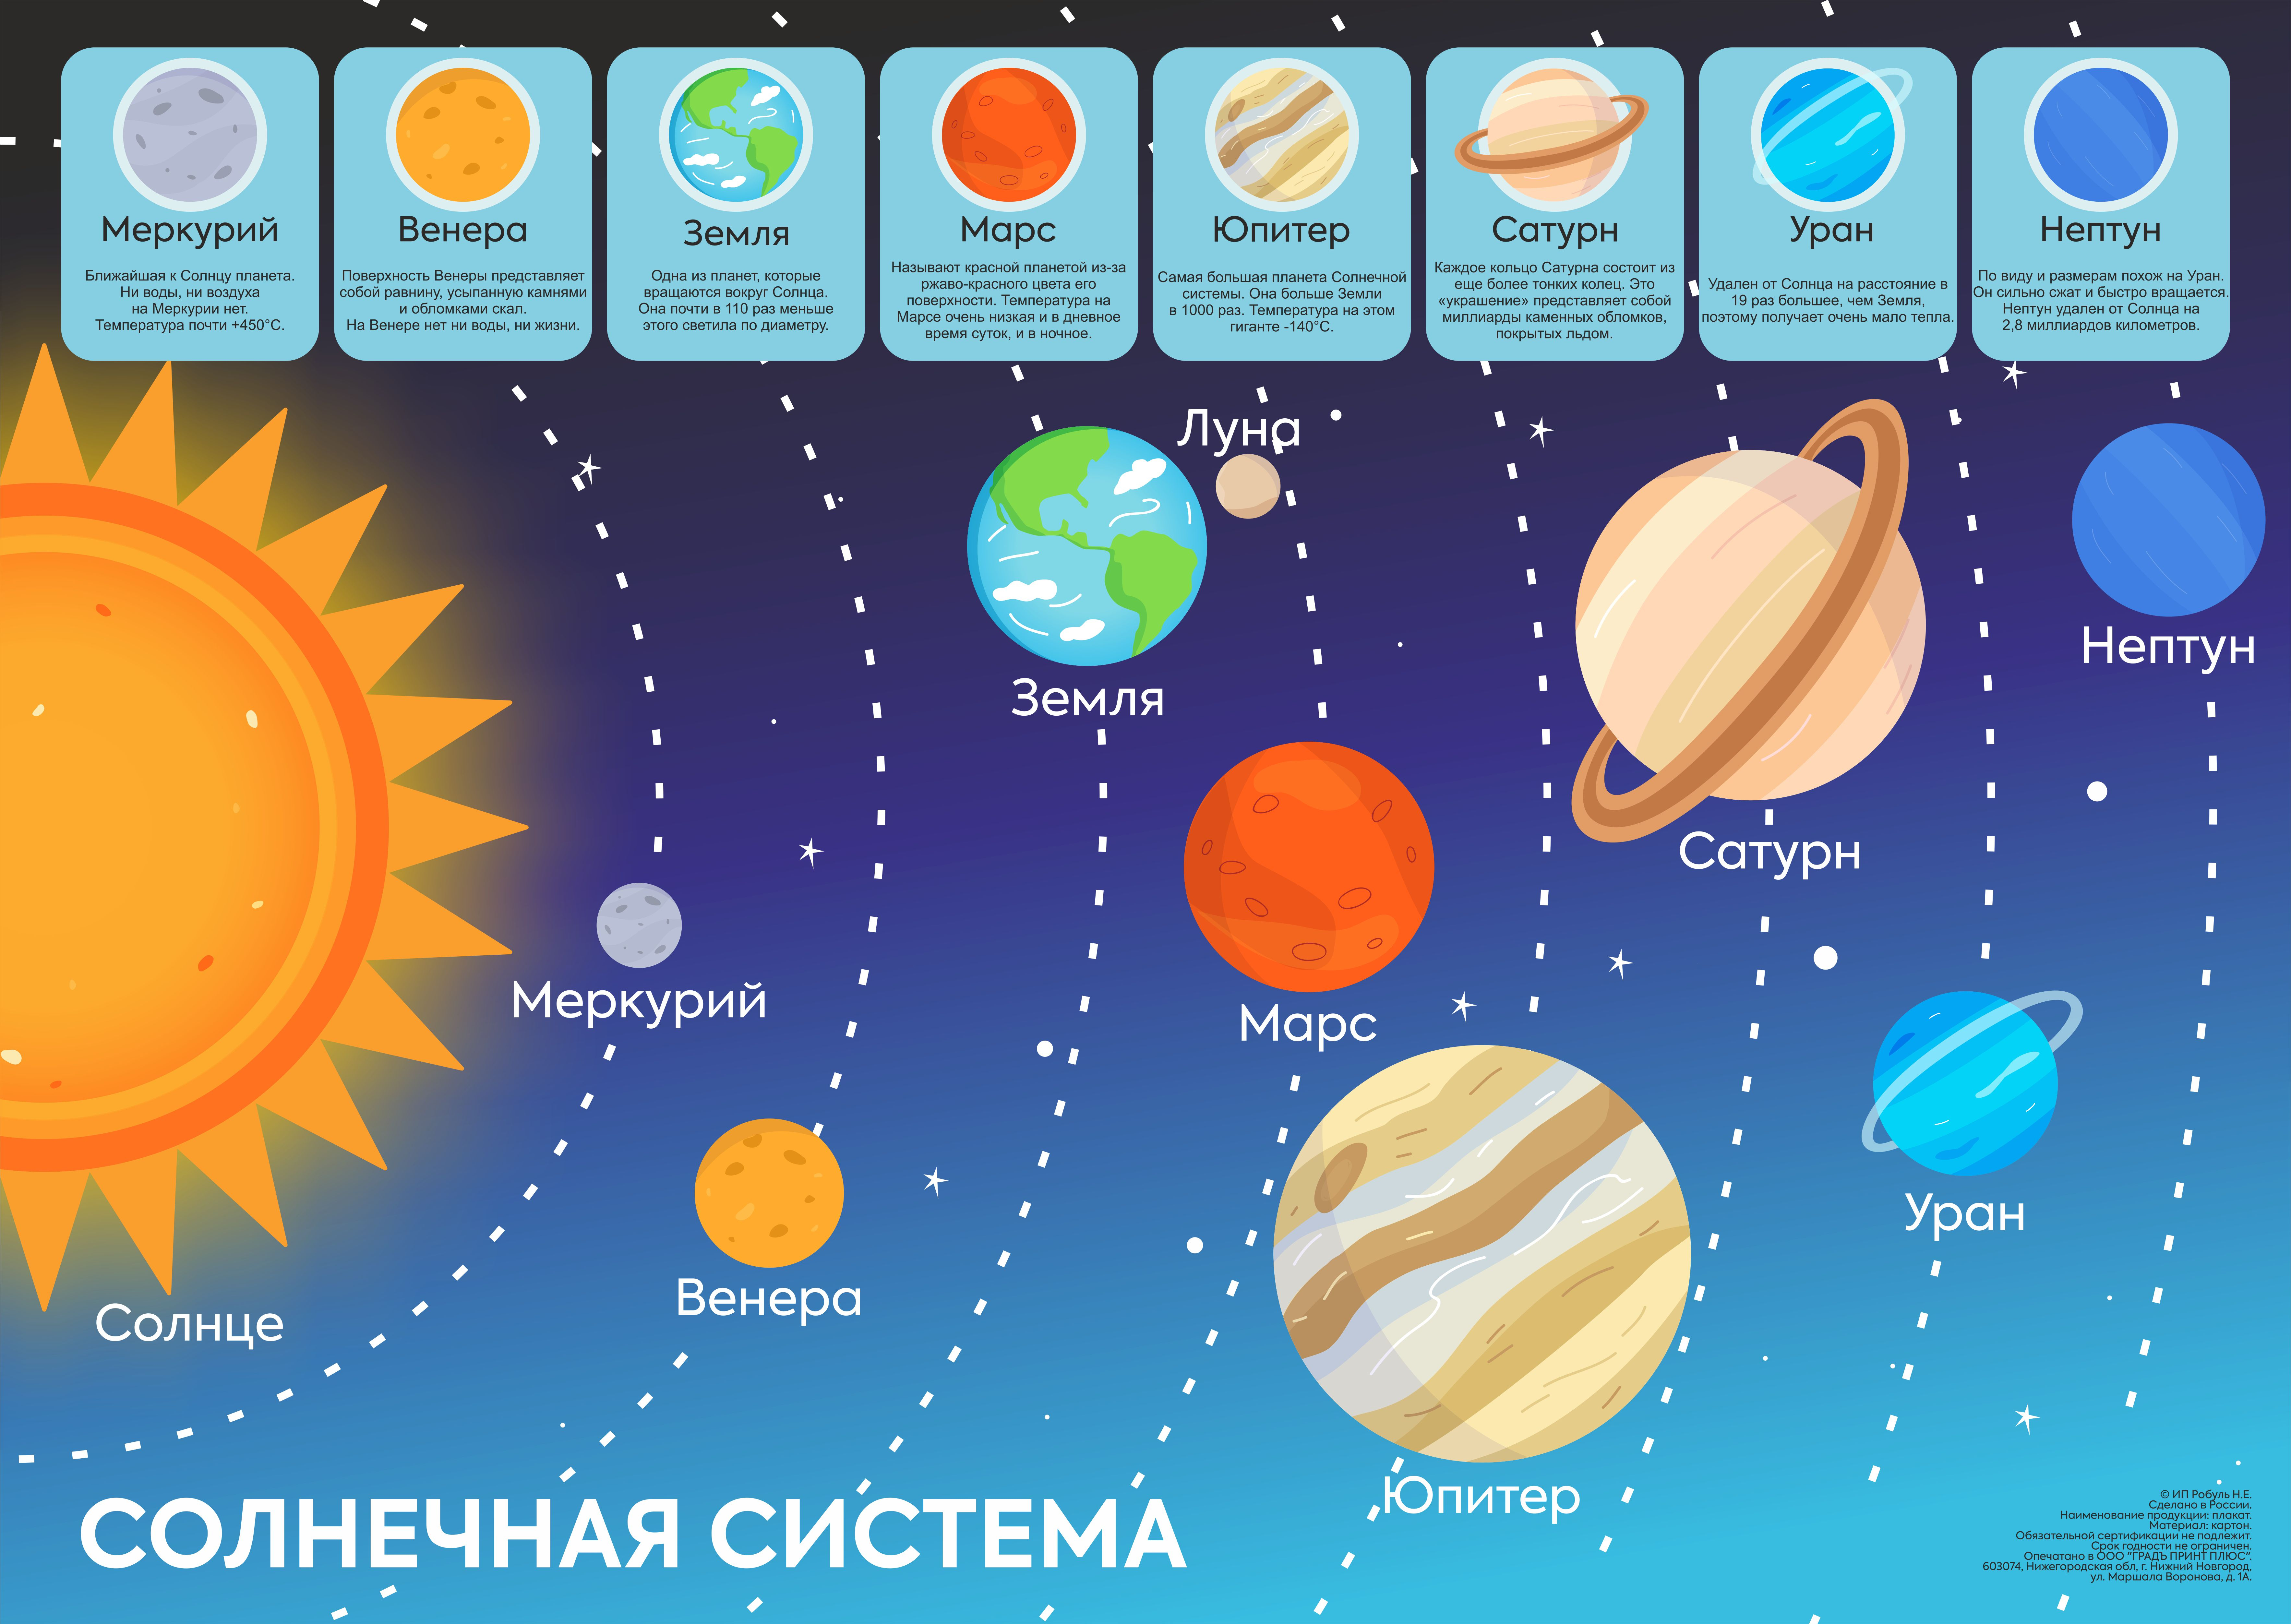 фото всех планет солнечной системы